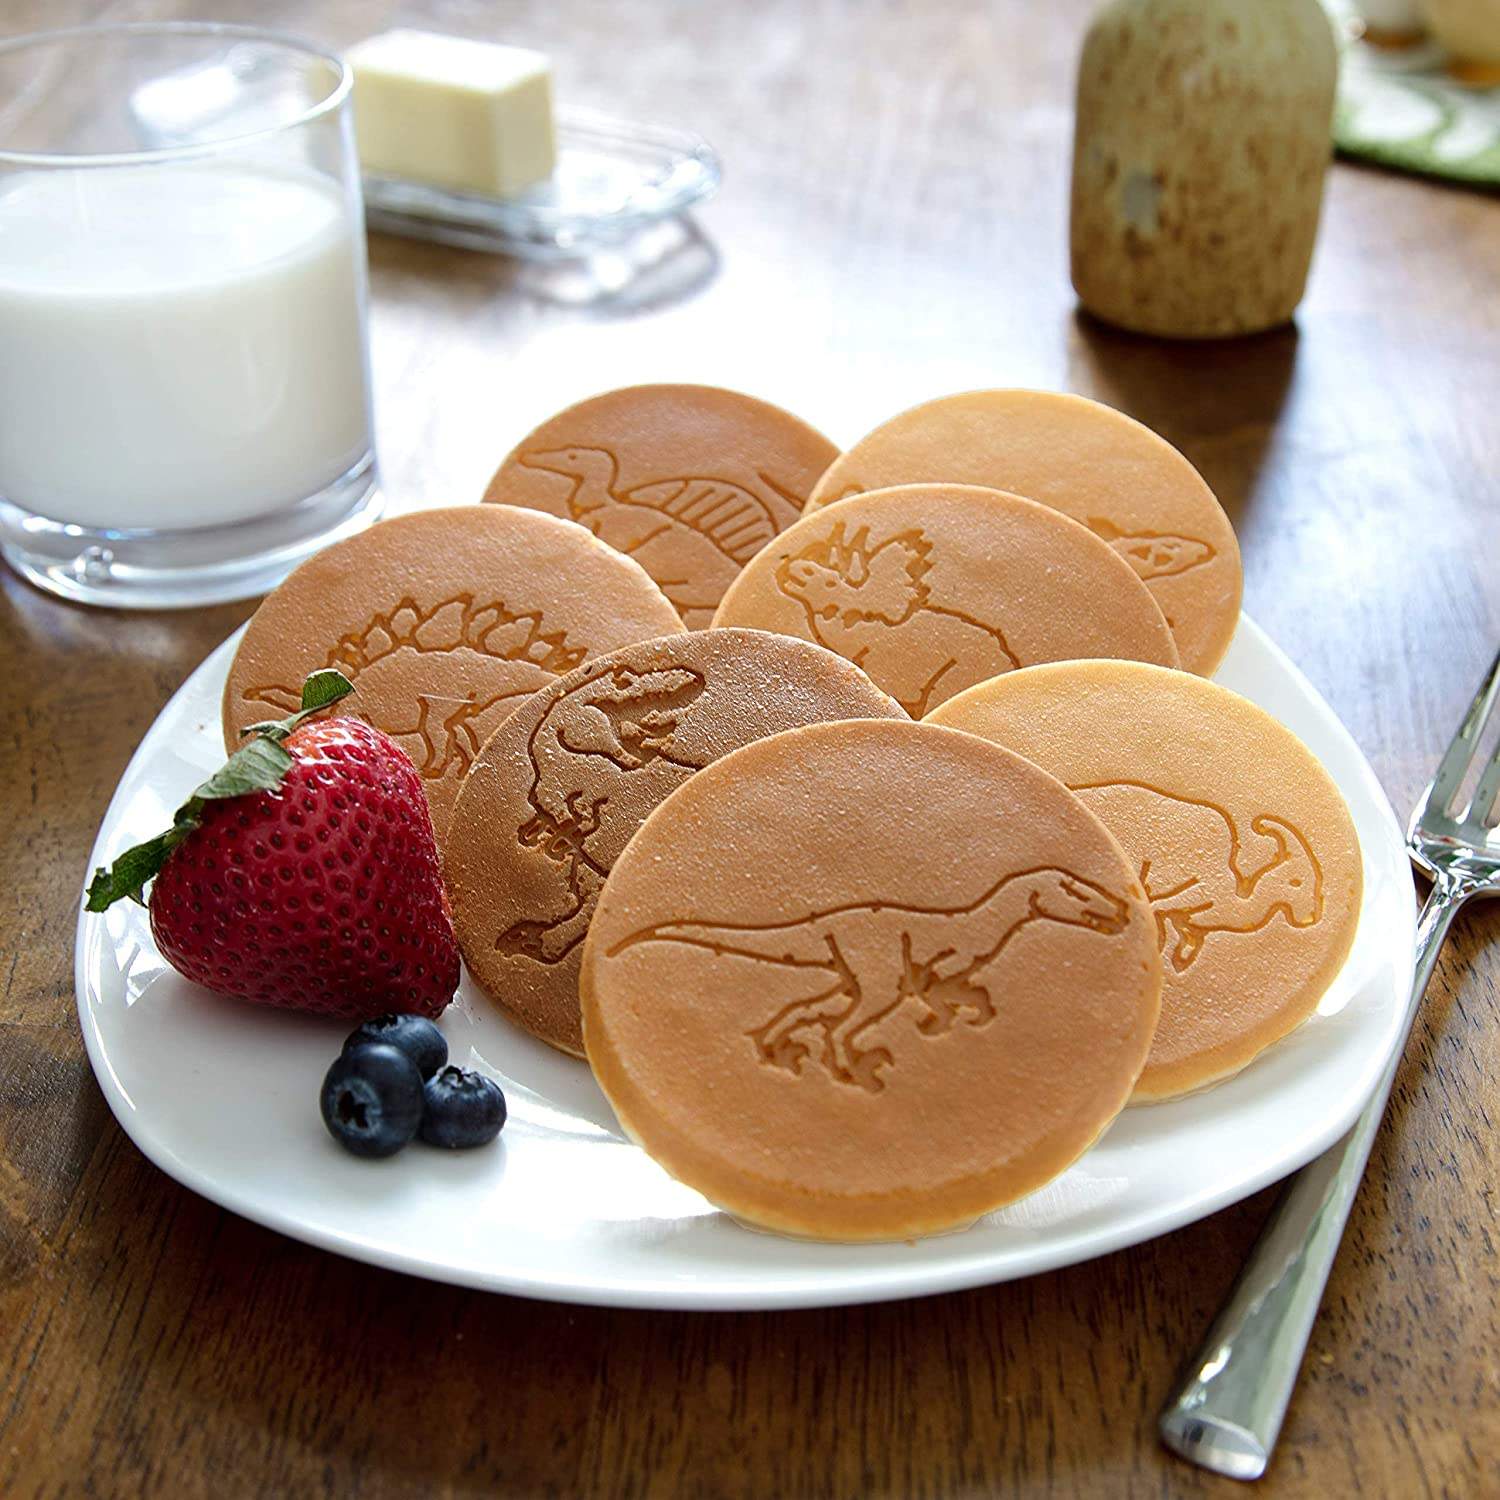 Pancake Maker Pancake Pan for Kids Pancake Griddle Induction Pan Nonstick  Pancake Molds for Kids Mini Animal Pancake Pan 